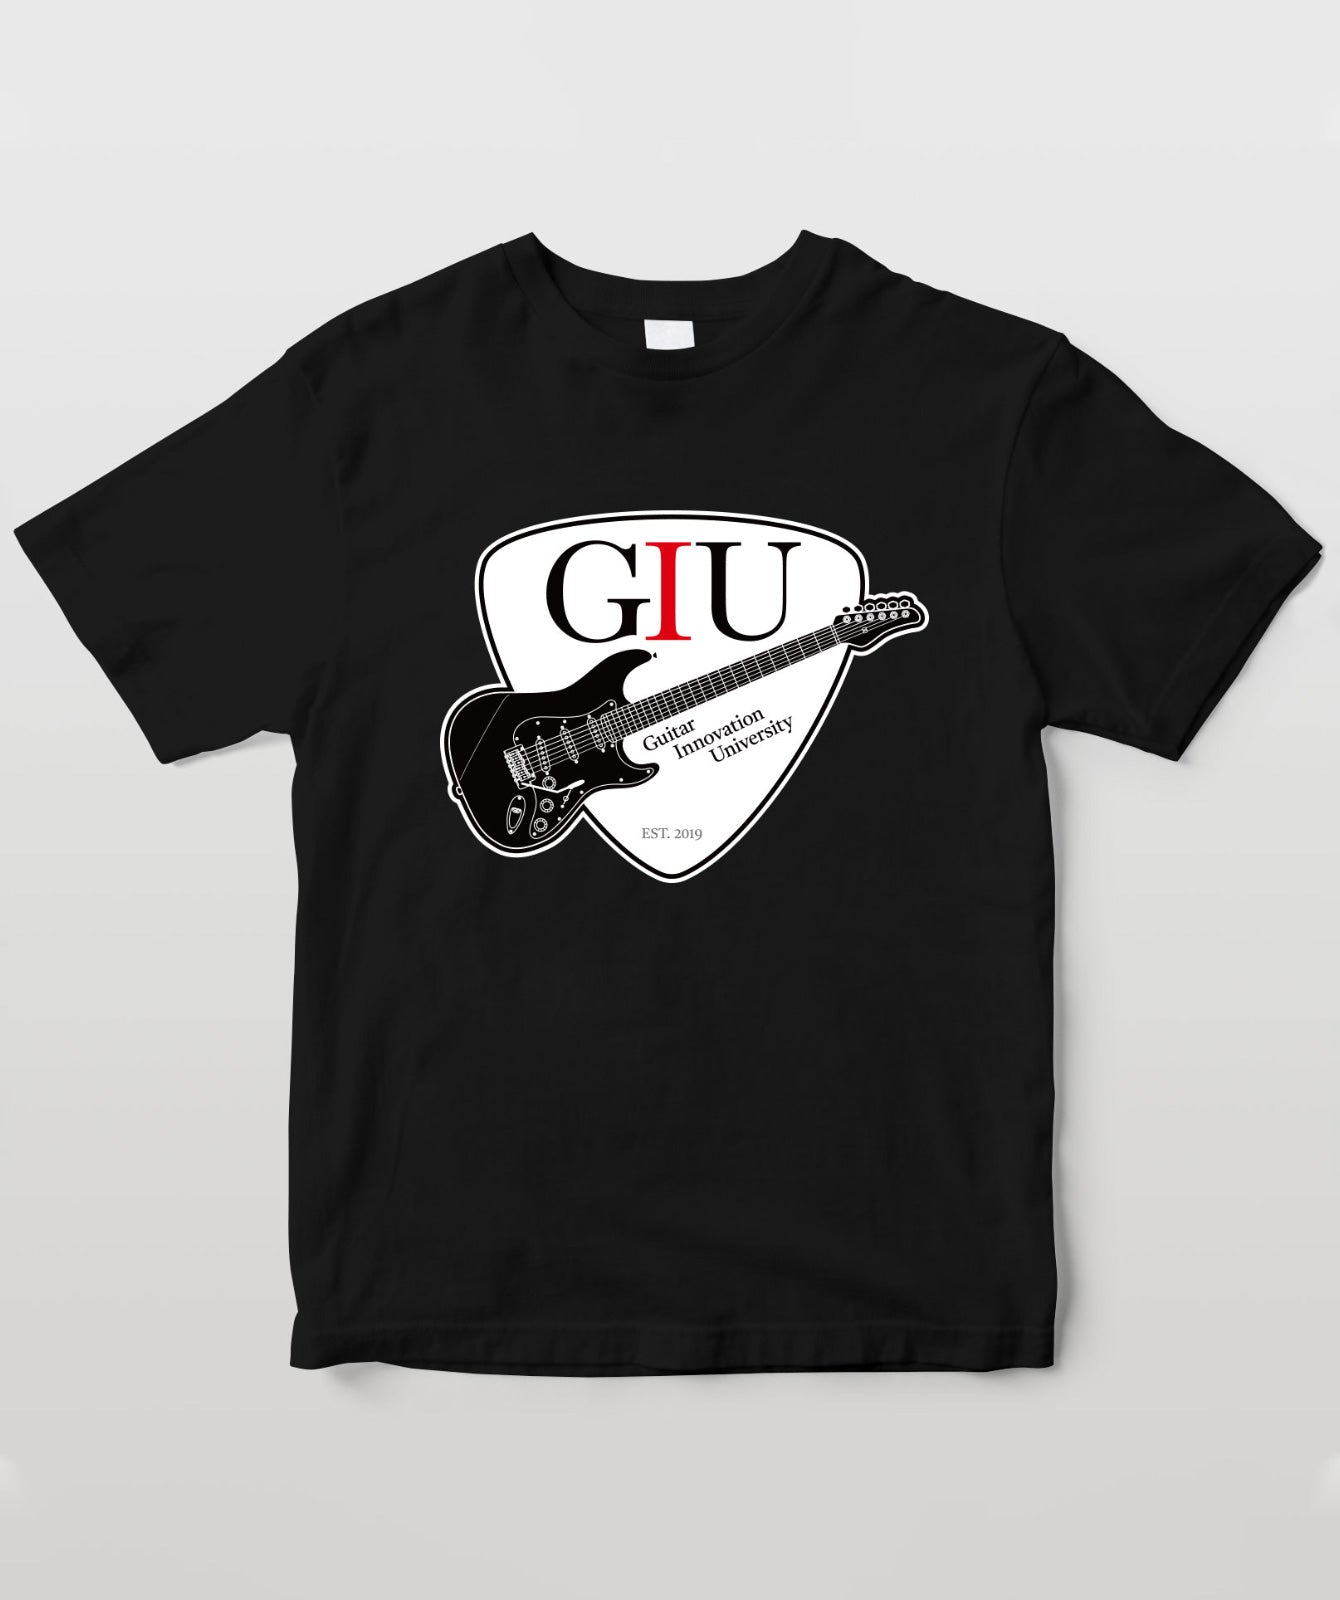 GIUギターピックver.